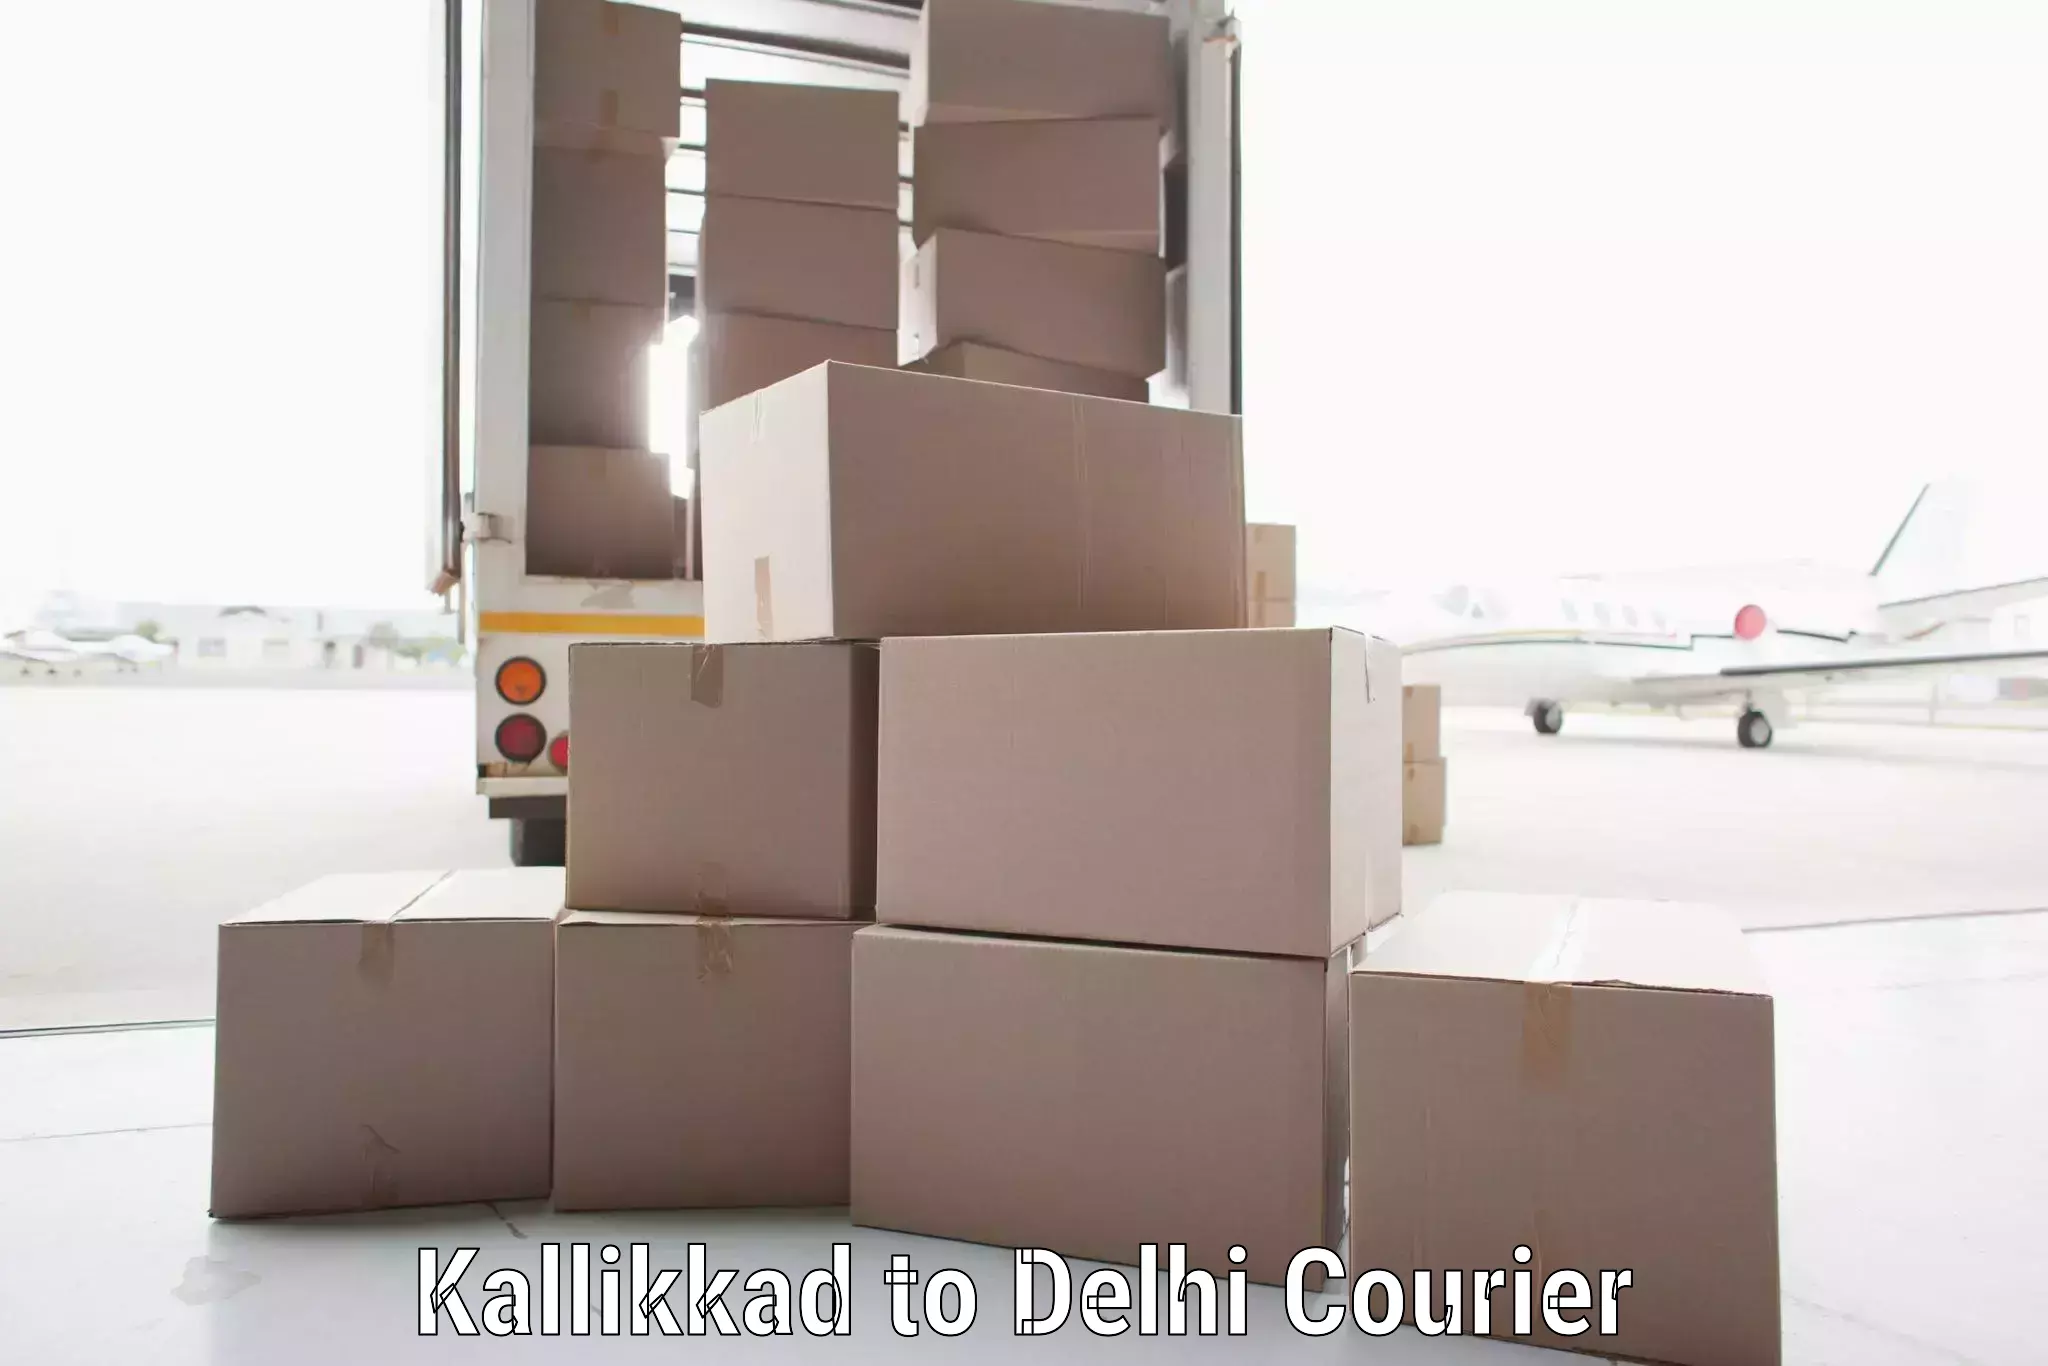 Global courier networks Kallikkad to Delhi